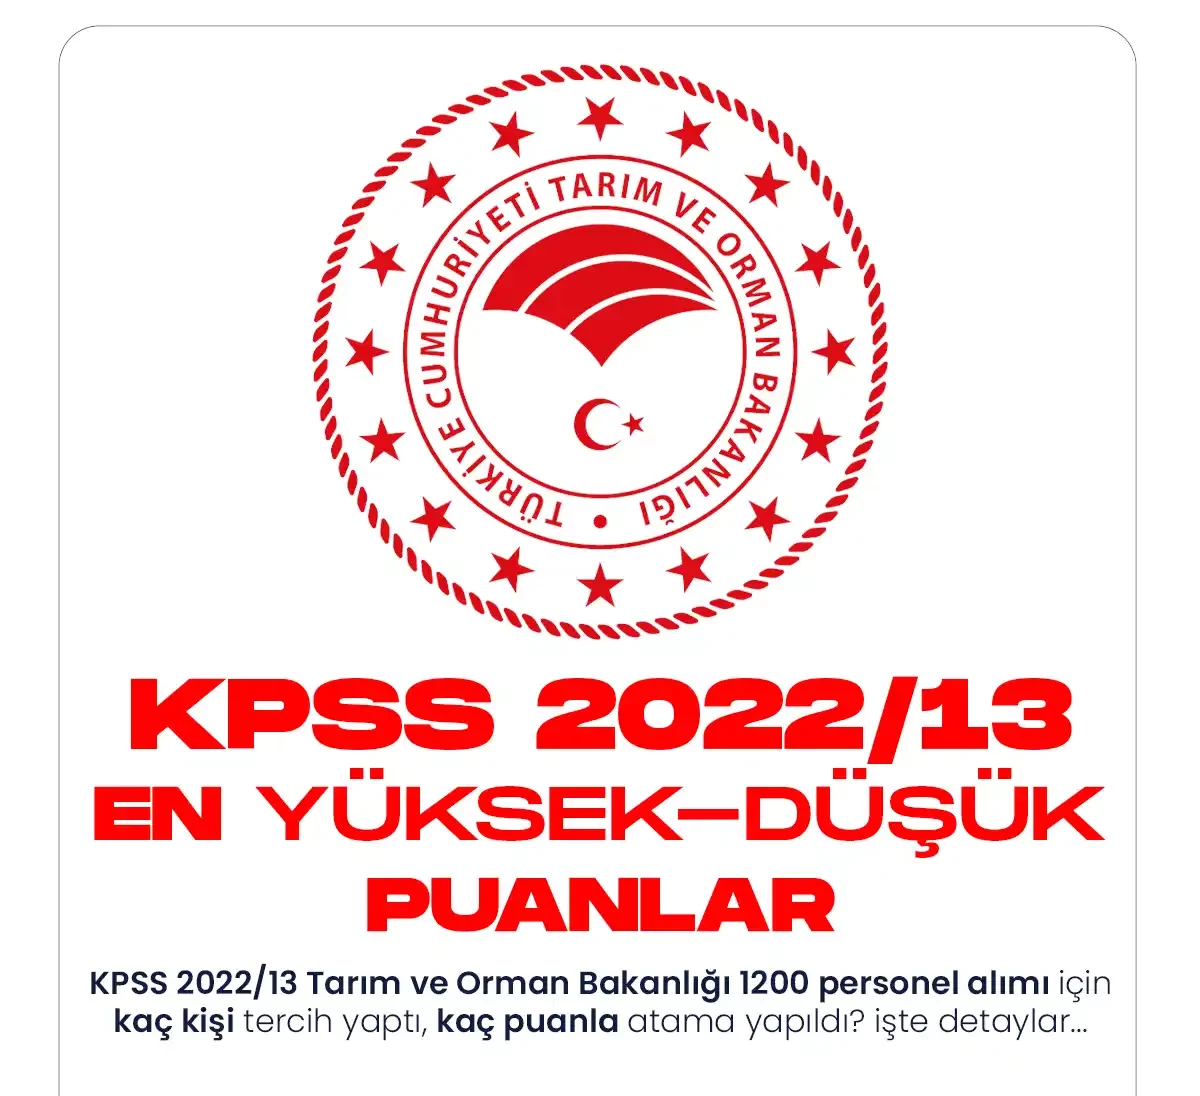 KPSS 2022 13 Tercih sonuçlarına göre en yüksek ve en düşük puanlar.